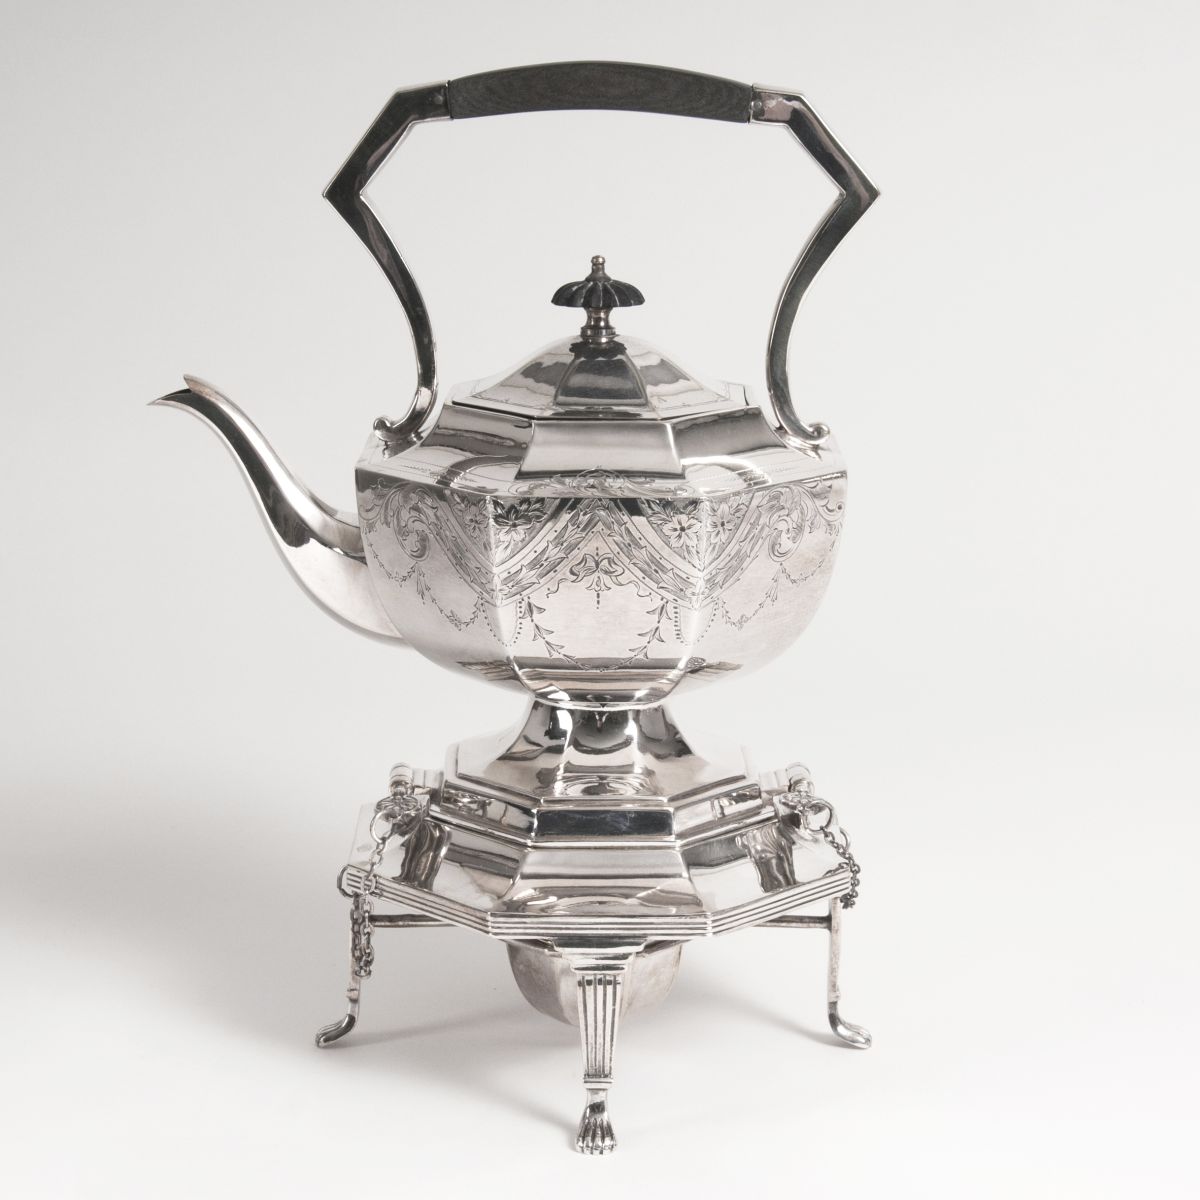 Viktorianischer Teekessel auf Rechaud